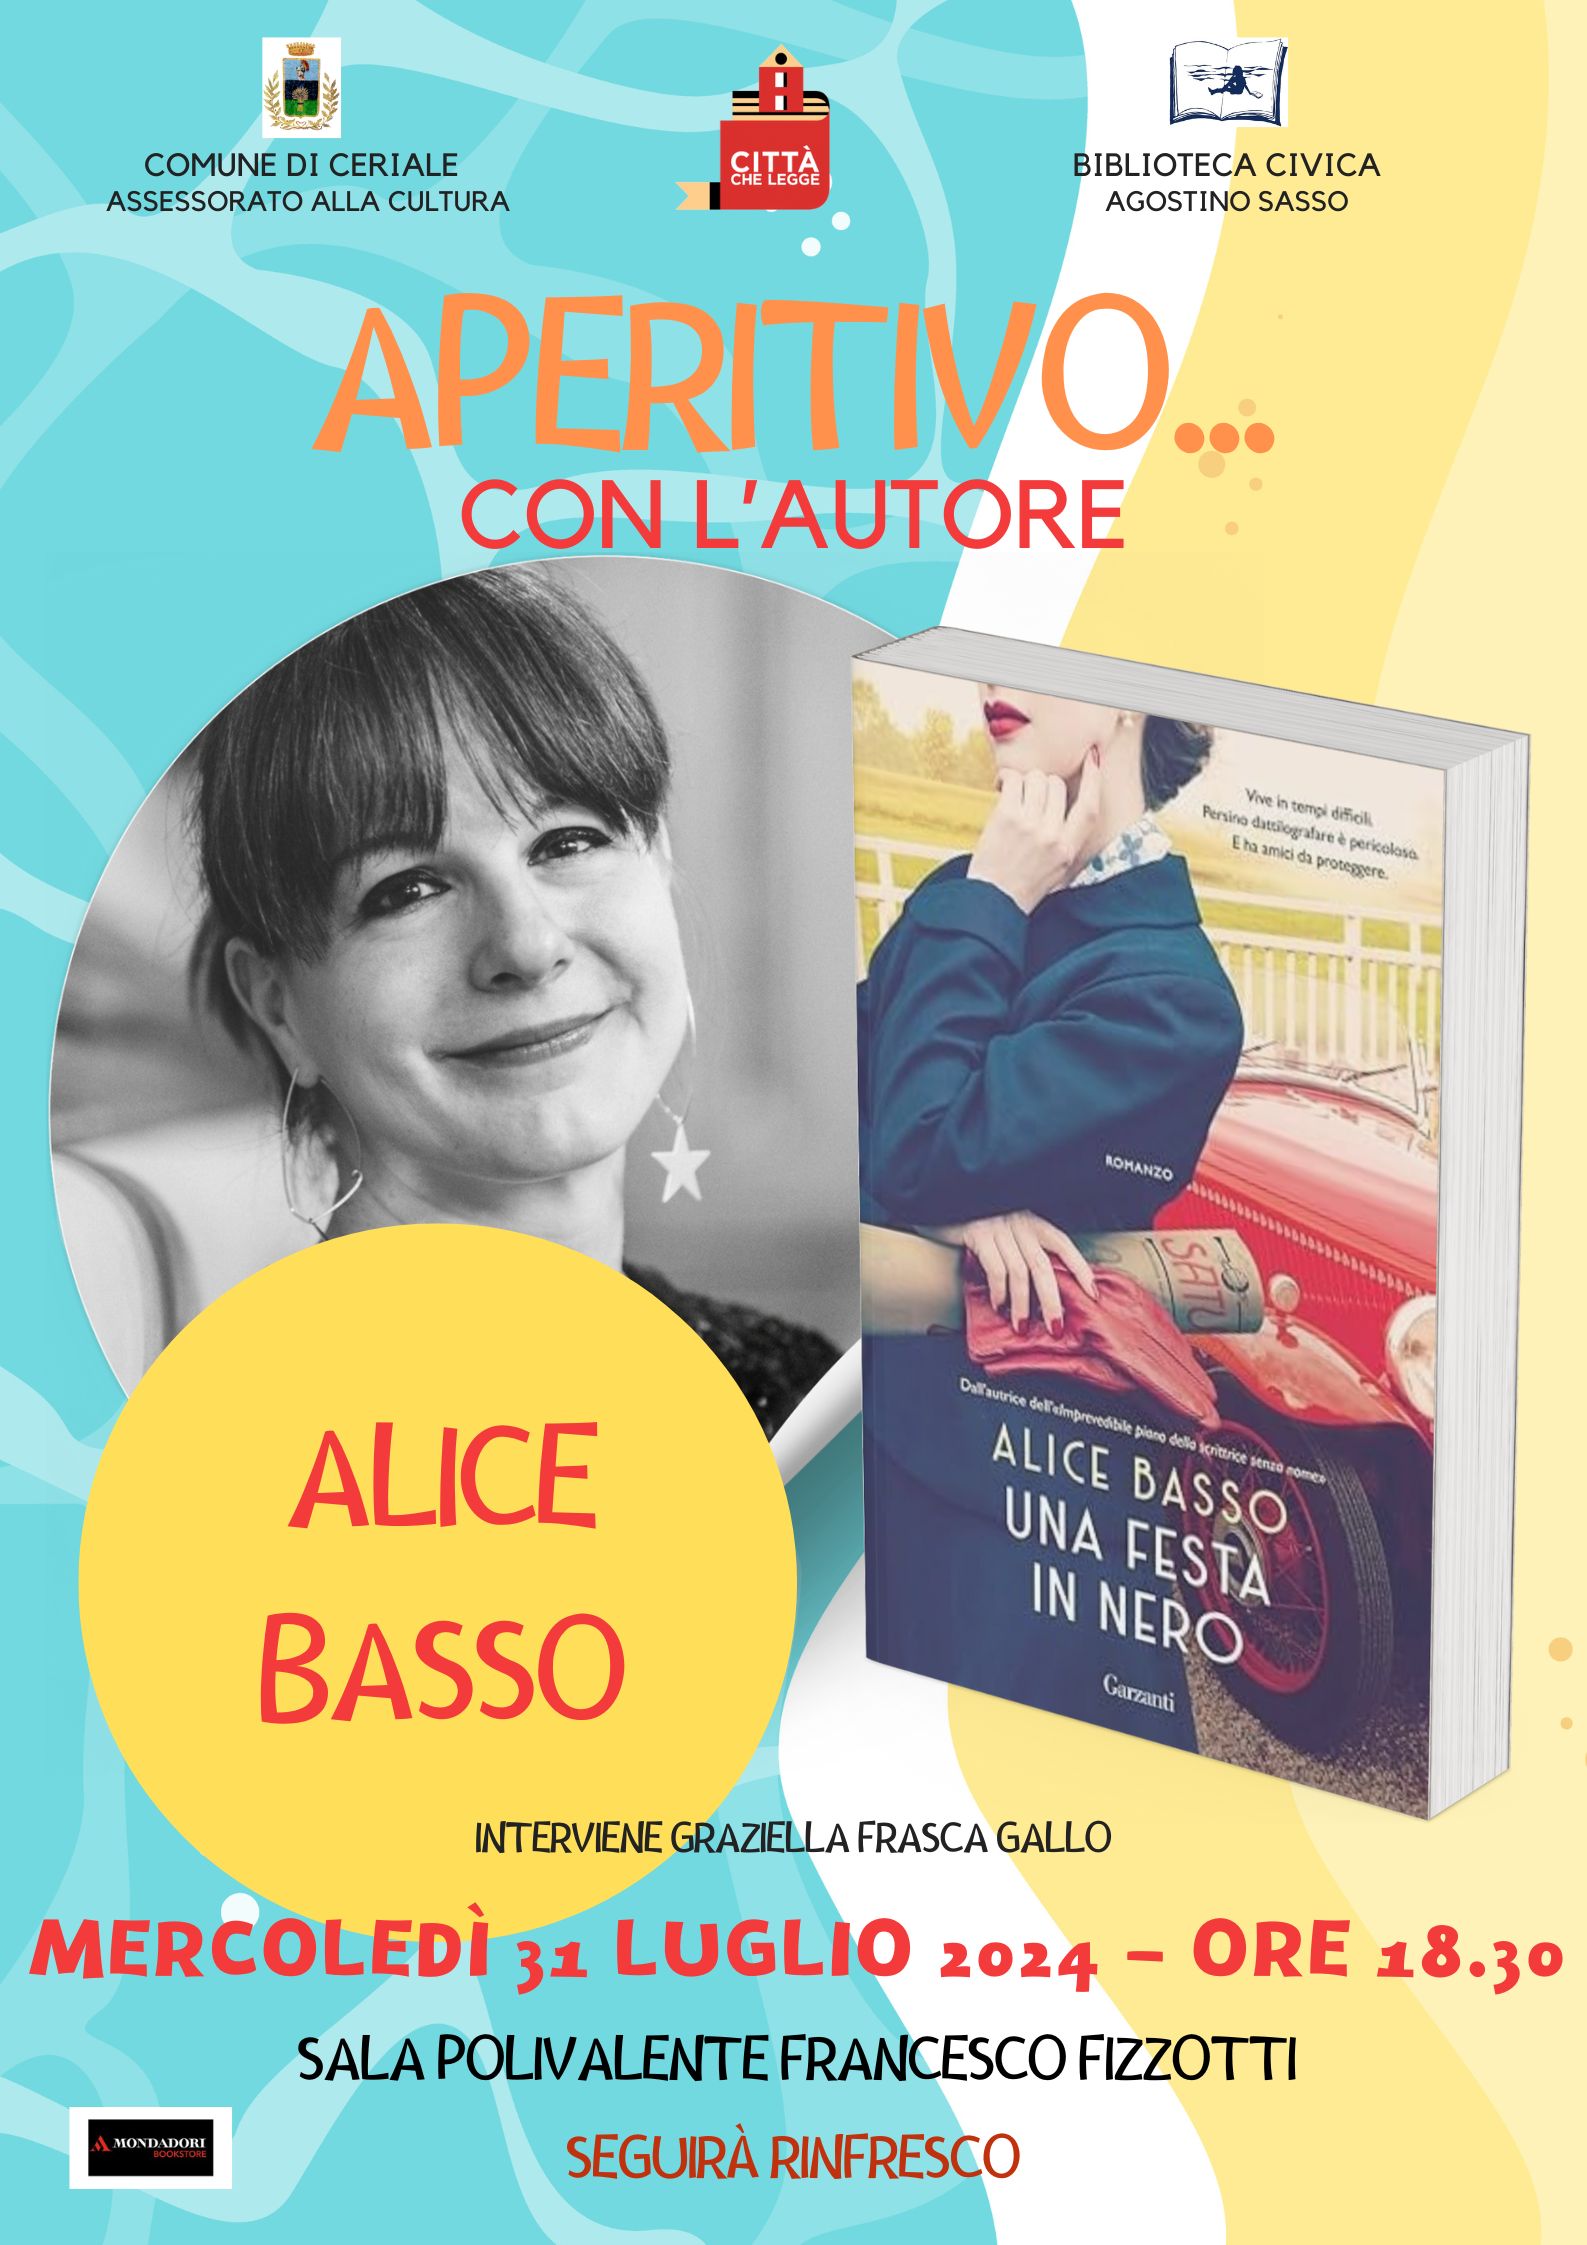 Aperitivo D'autore - Alice Basso presenta il libro 